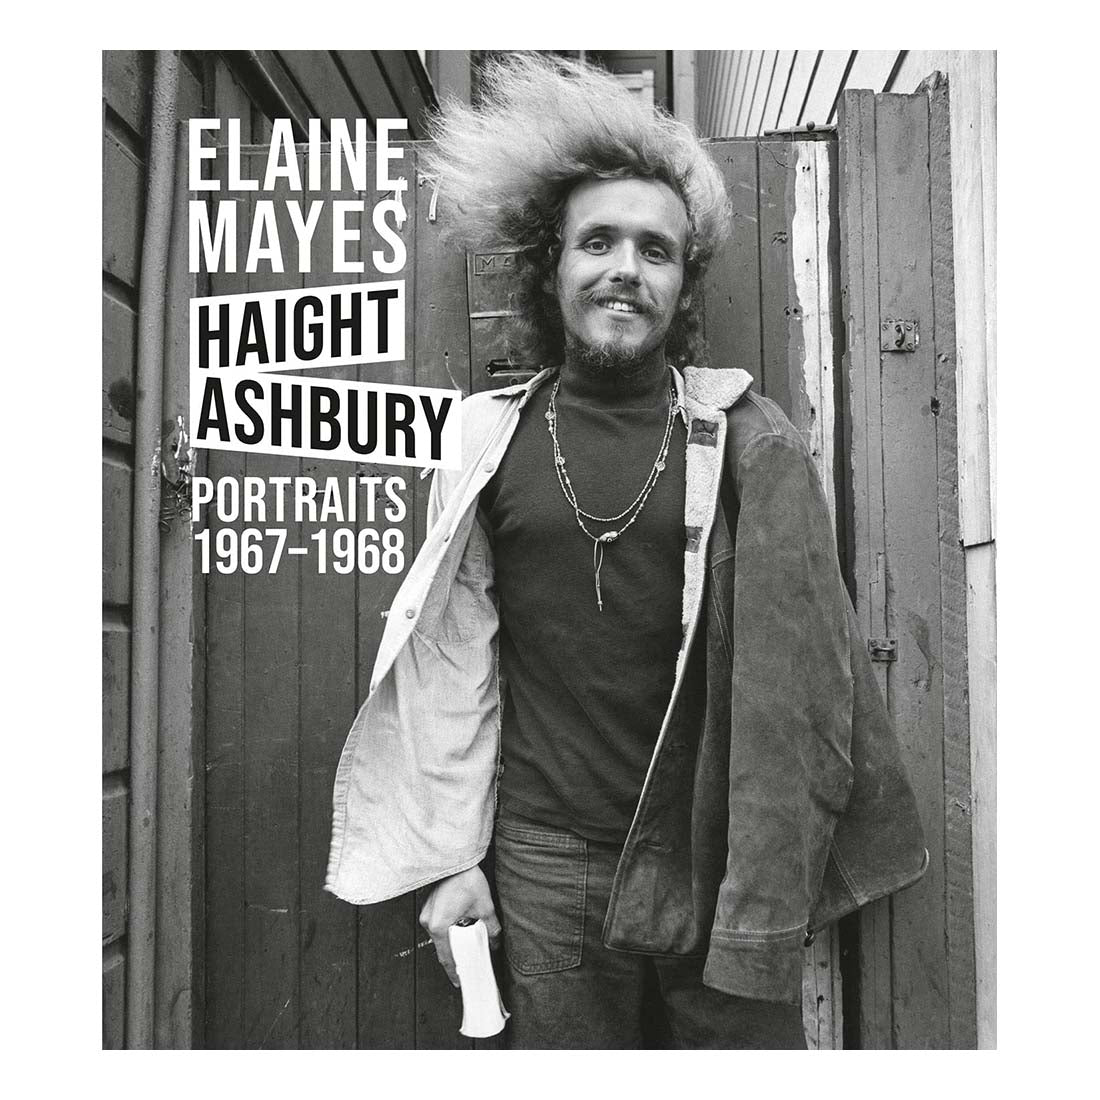 Elaine Mayes: The Haight Ashbury Portraits, 1967-1968